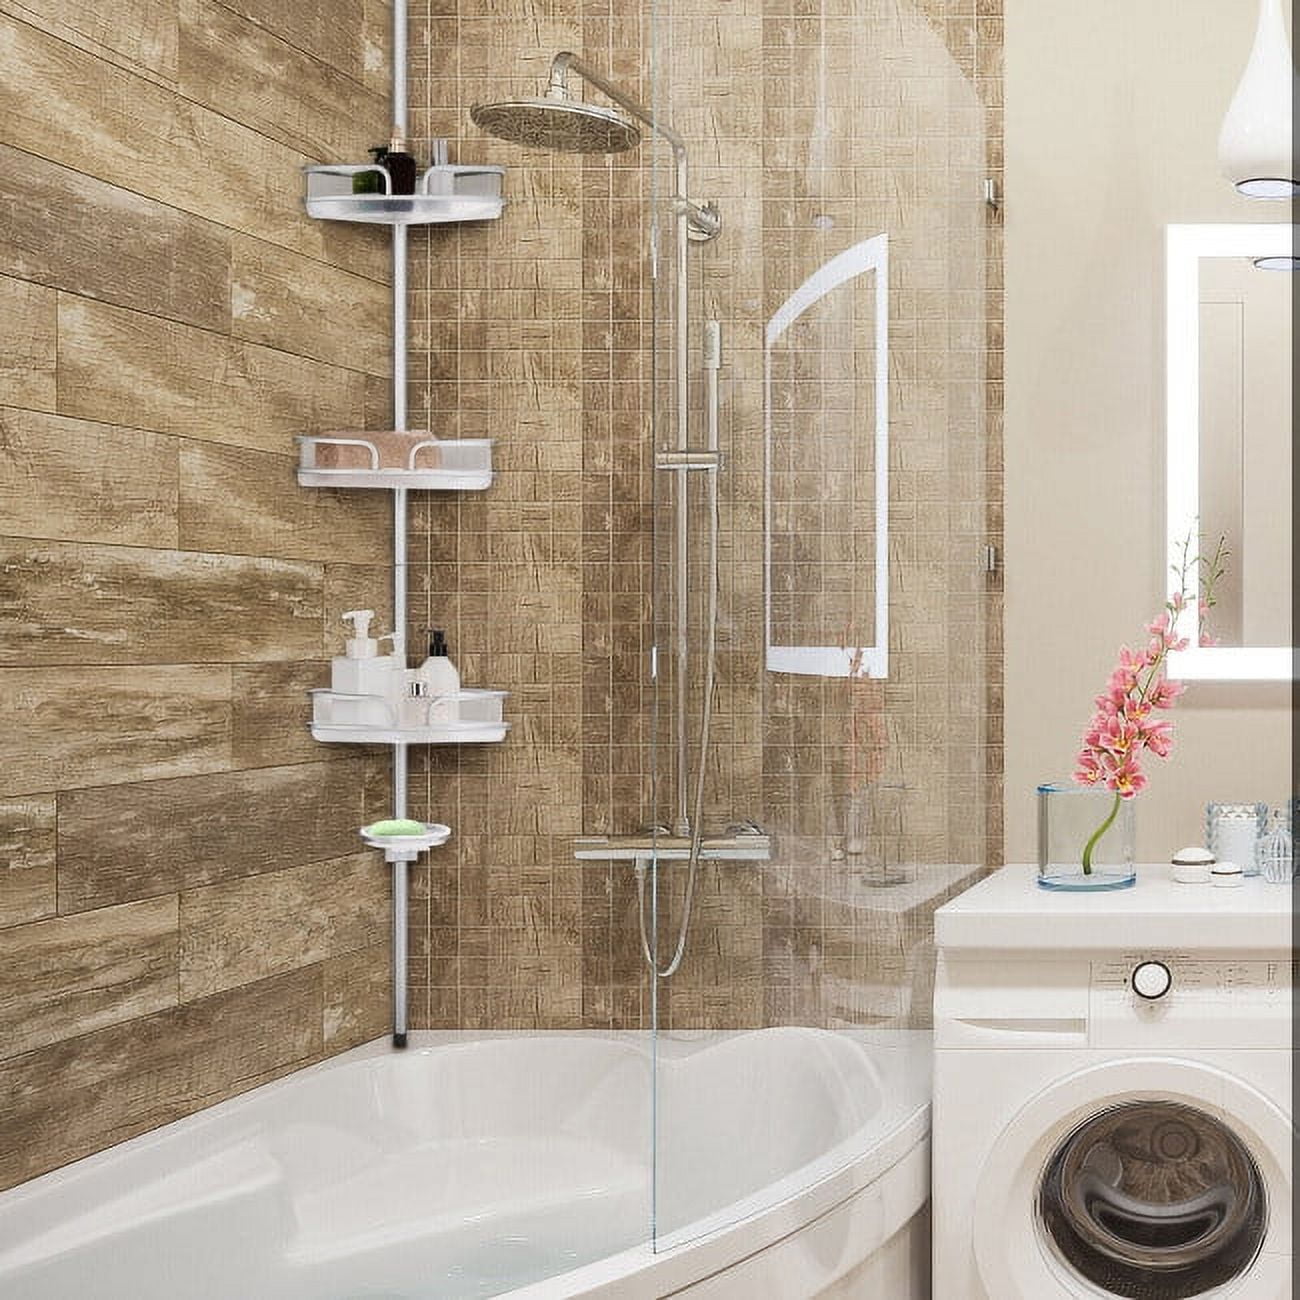 YIGII Modern Shower Caddy KH004CH - Tools for Kitchen & Bathroom